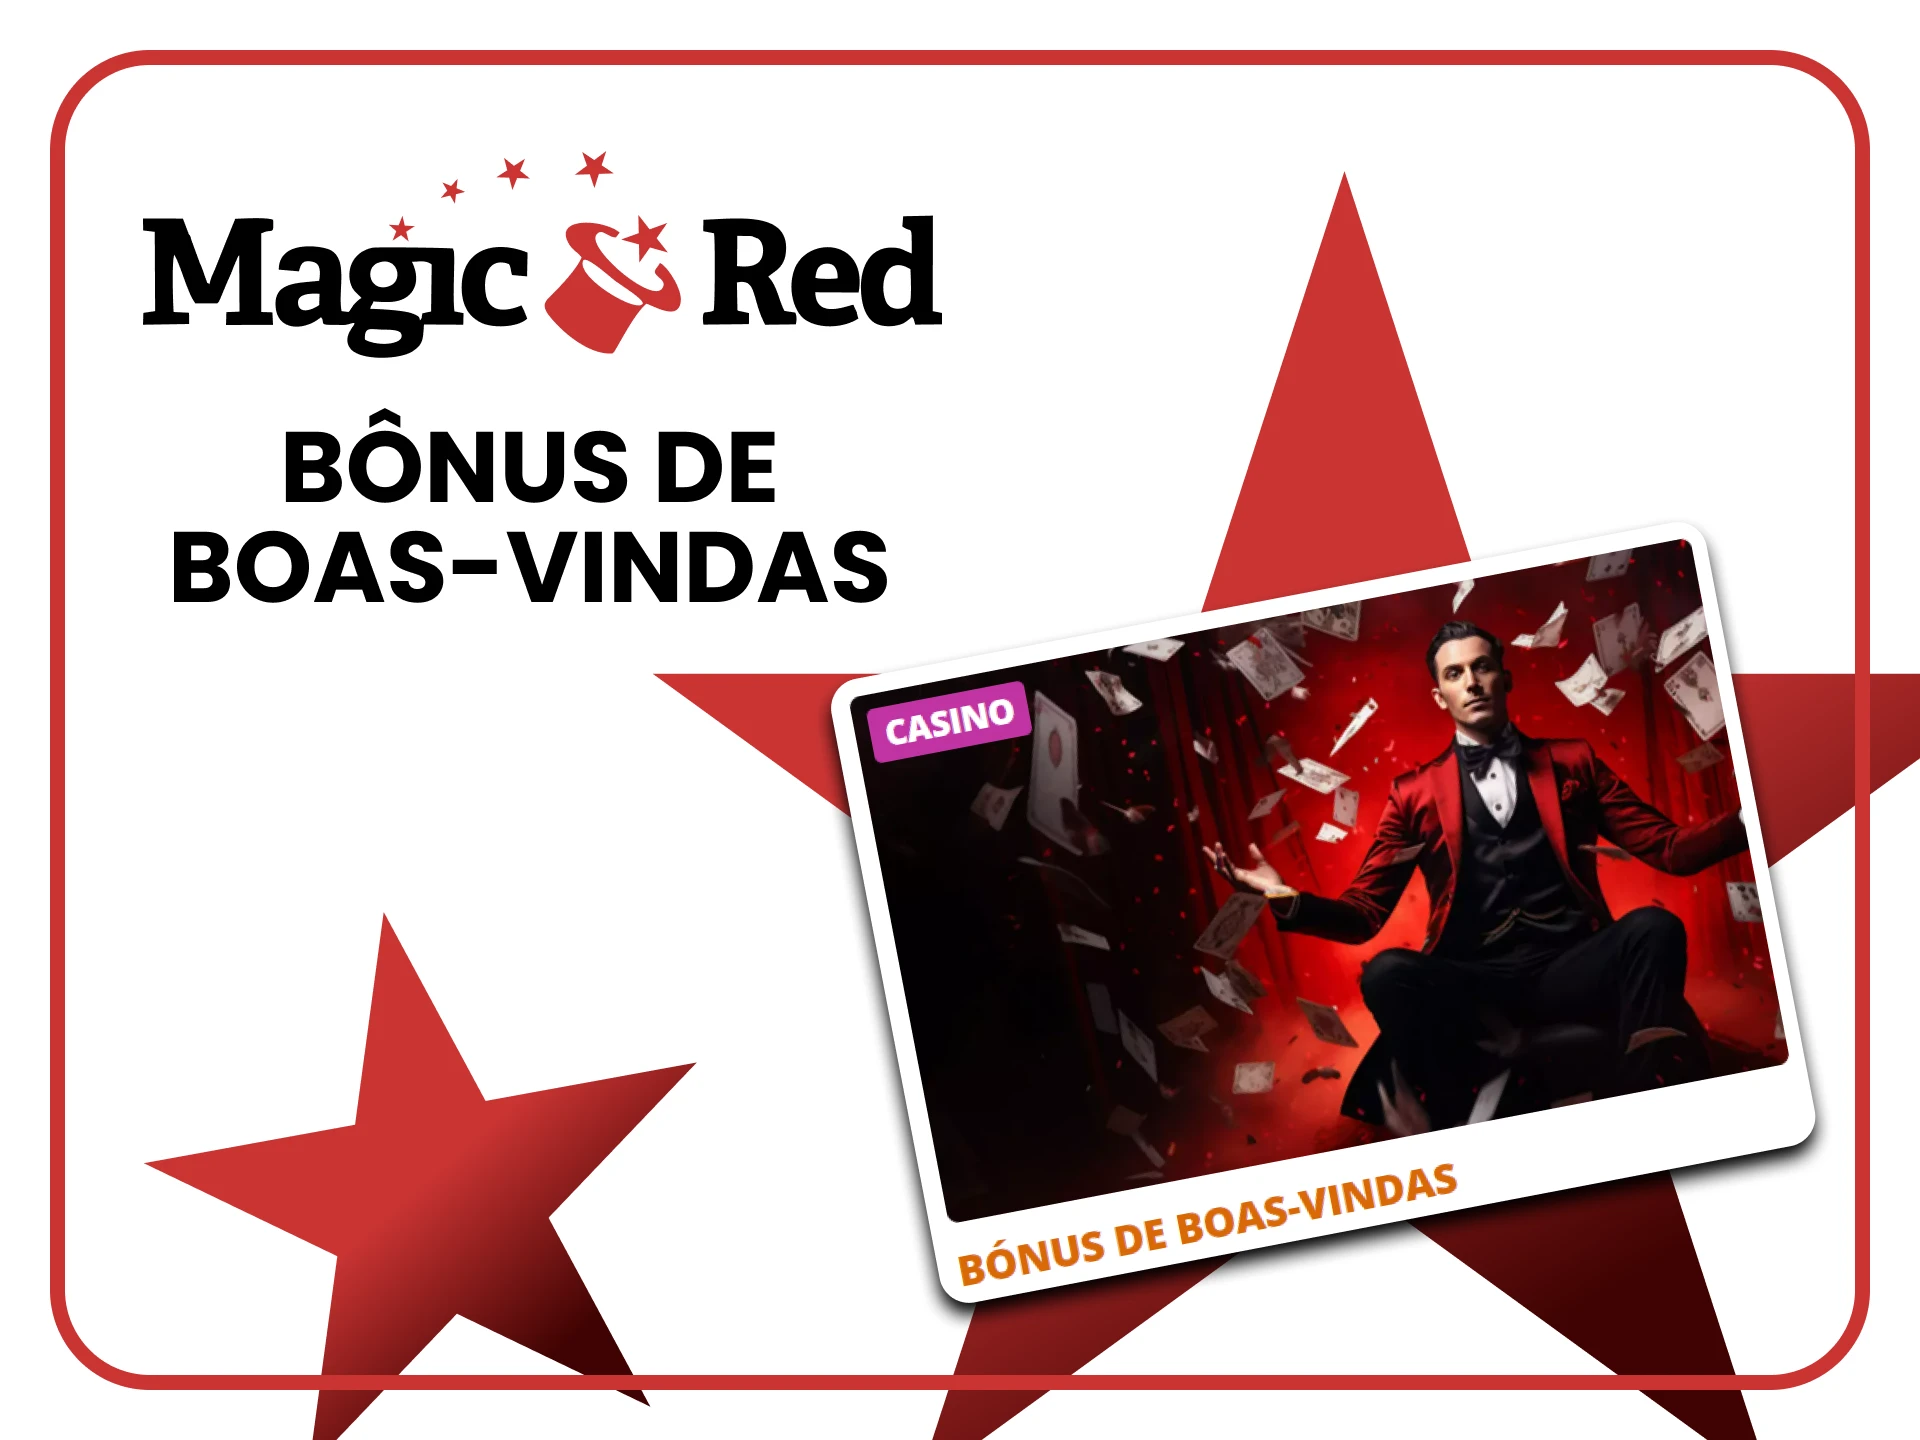 Magic Red oferece bônus para jogos de cassino.